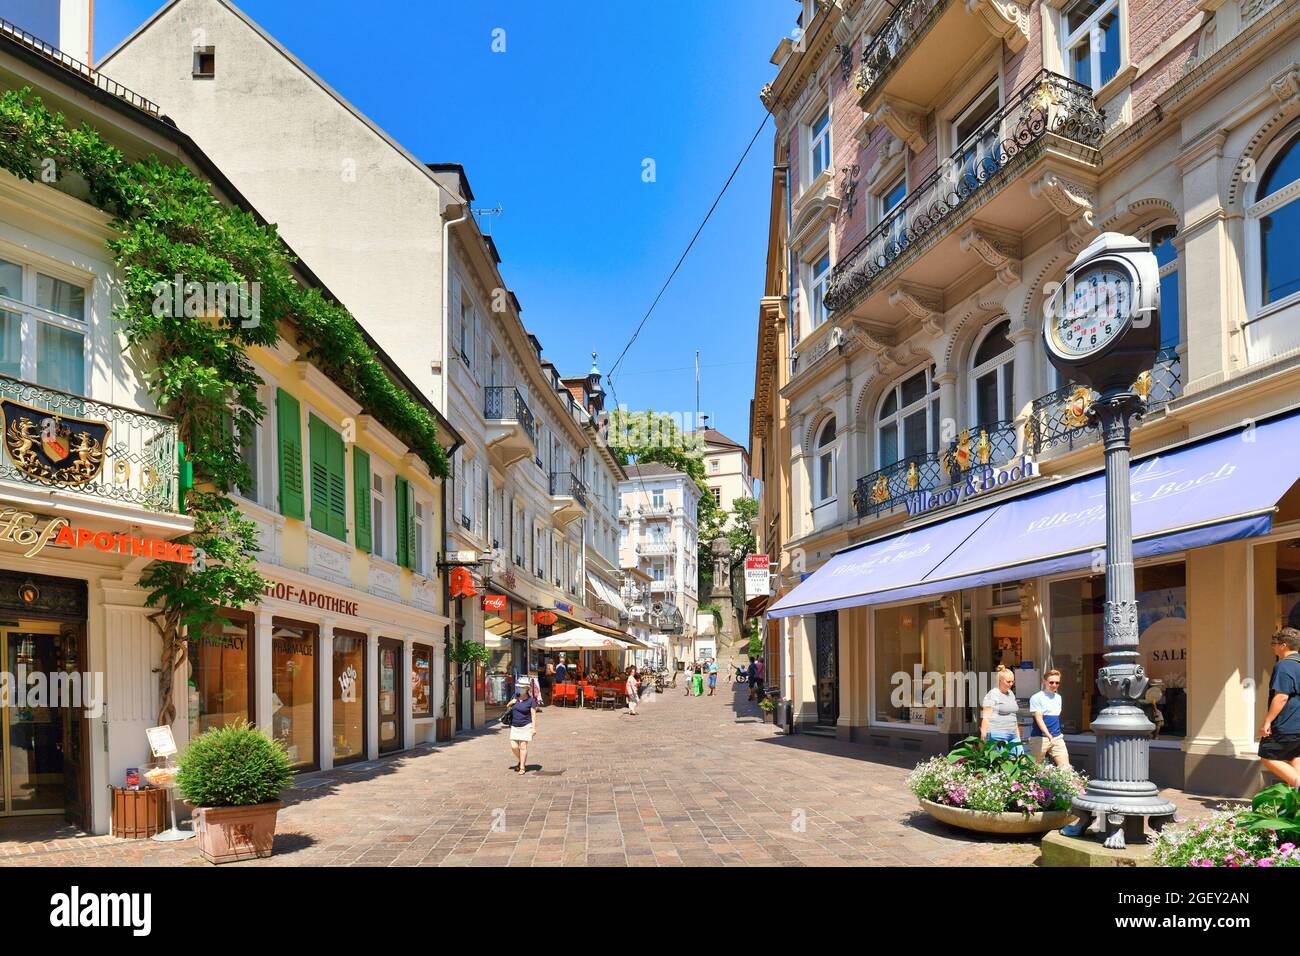 Baden-Baden, Allemagne - juillet 2021: Centre historique de la ville thermale de Baden-Baden par une journée ensoleillée d'été Banque D'Images